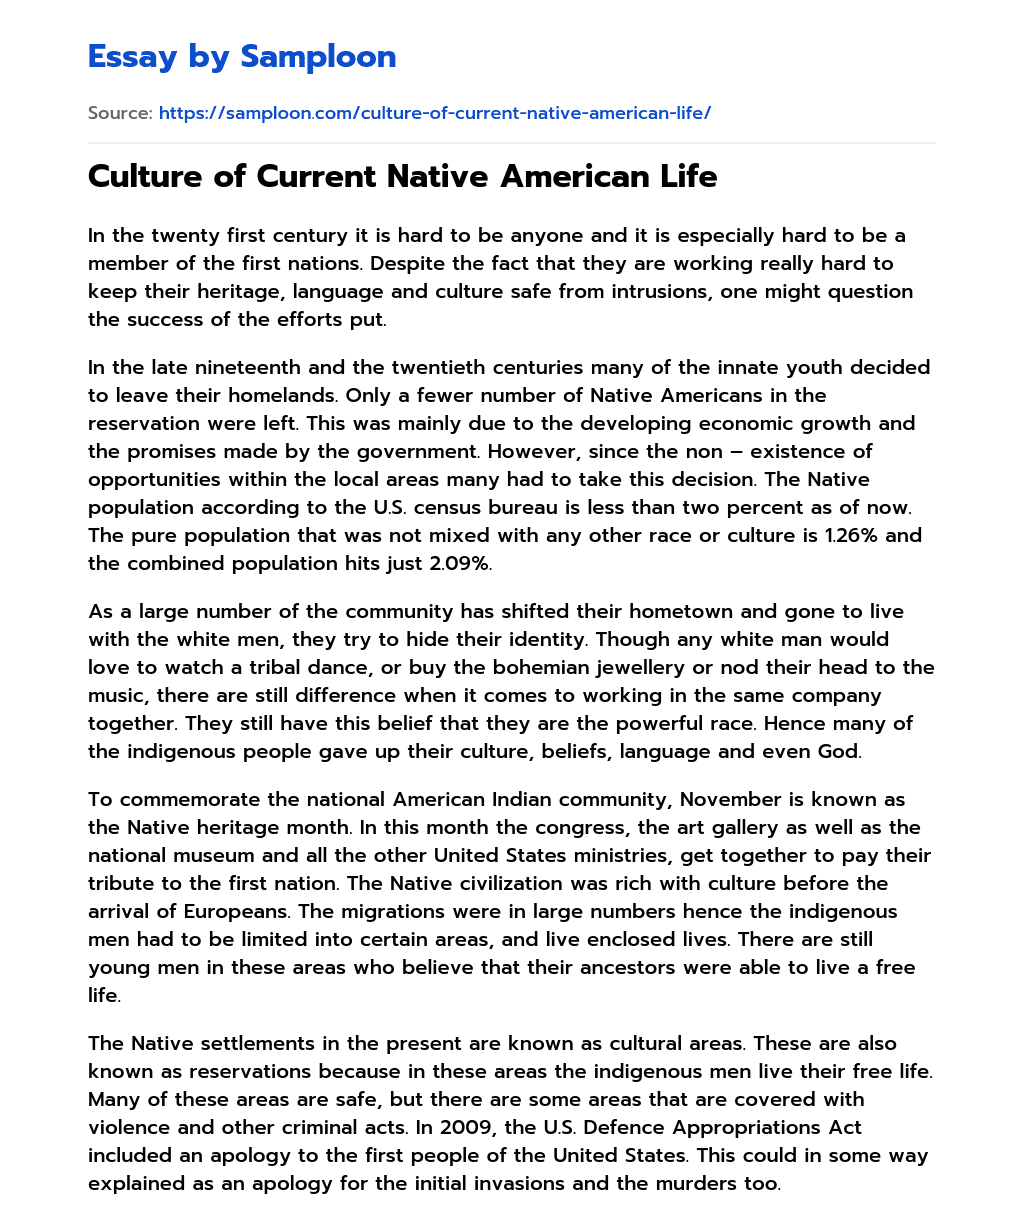 Culture of Current Native American Life essay